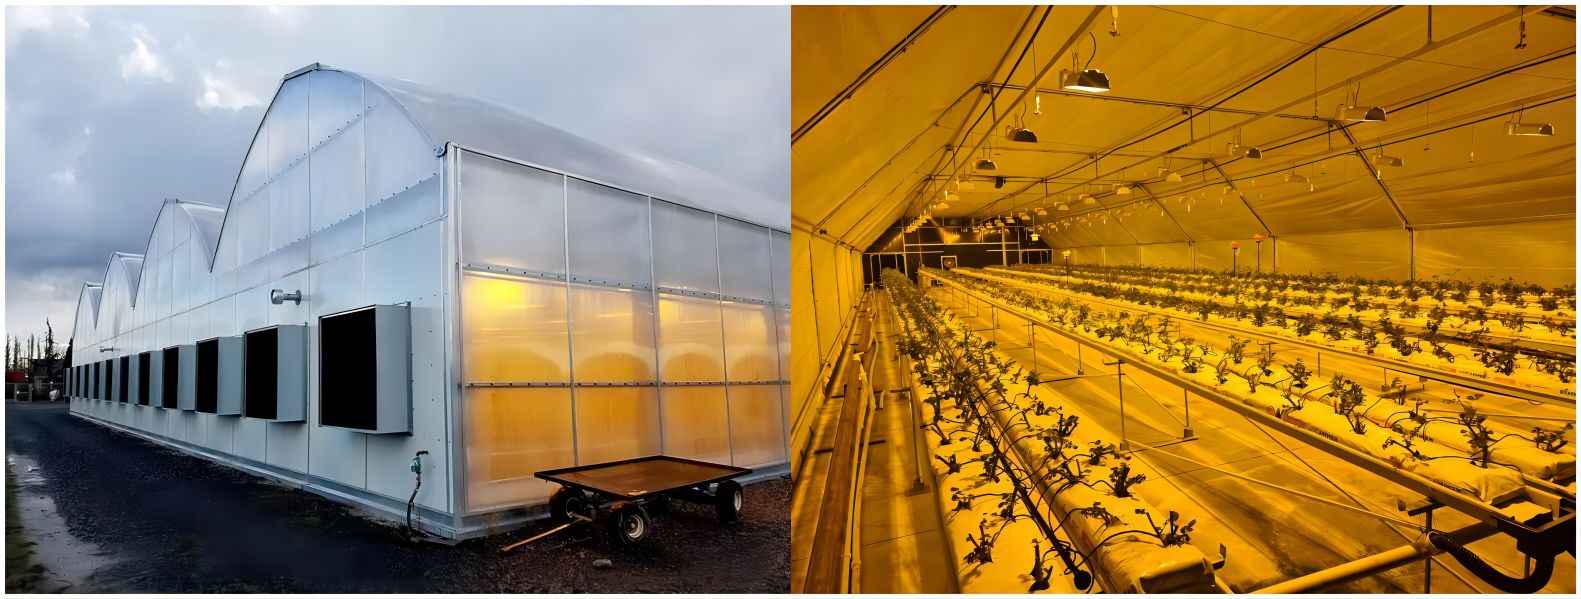 Jak využít světelnou deprivaci skleníku k pěstování průmyslového konopí?